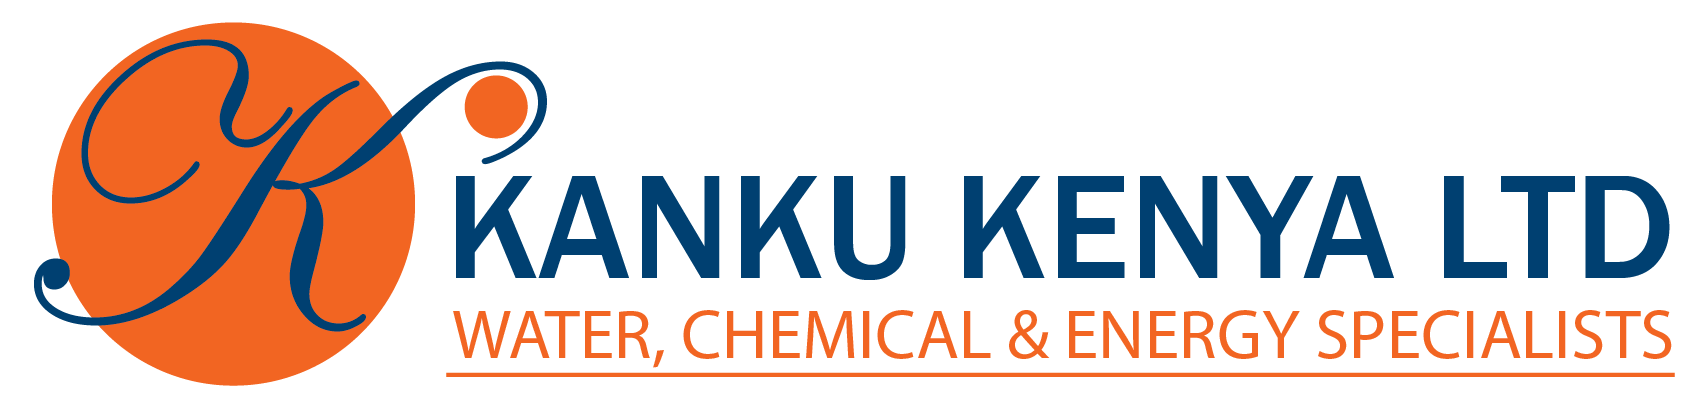 Kanku Kenya Ltd.